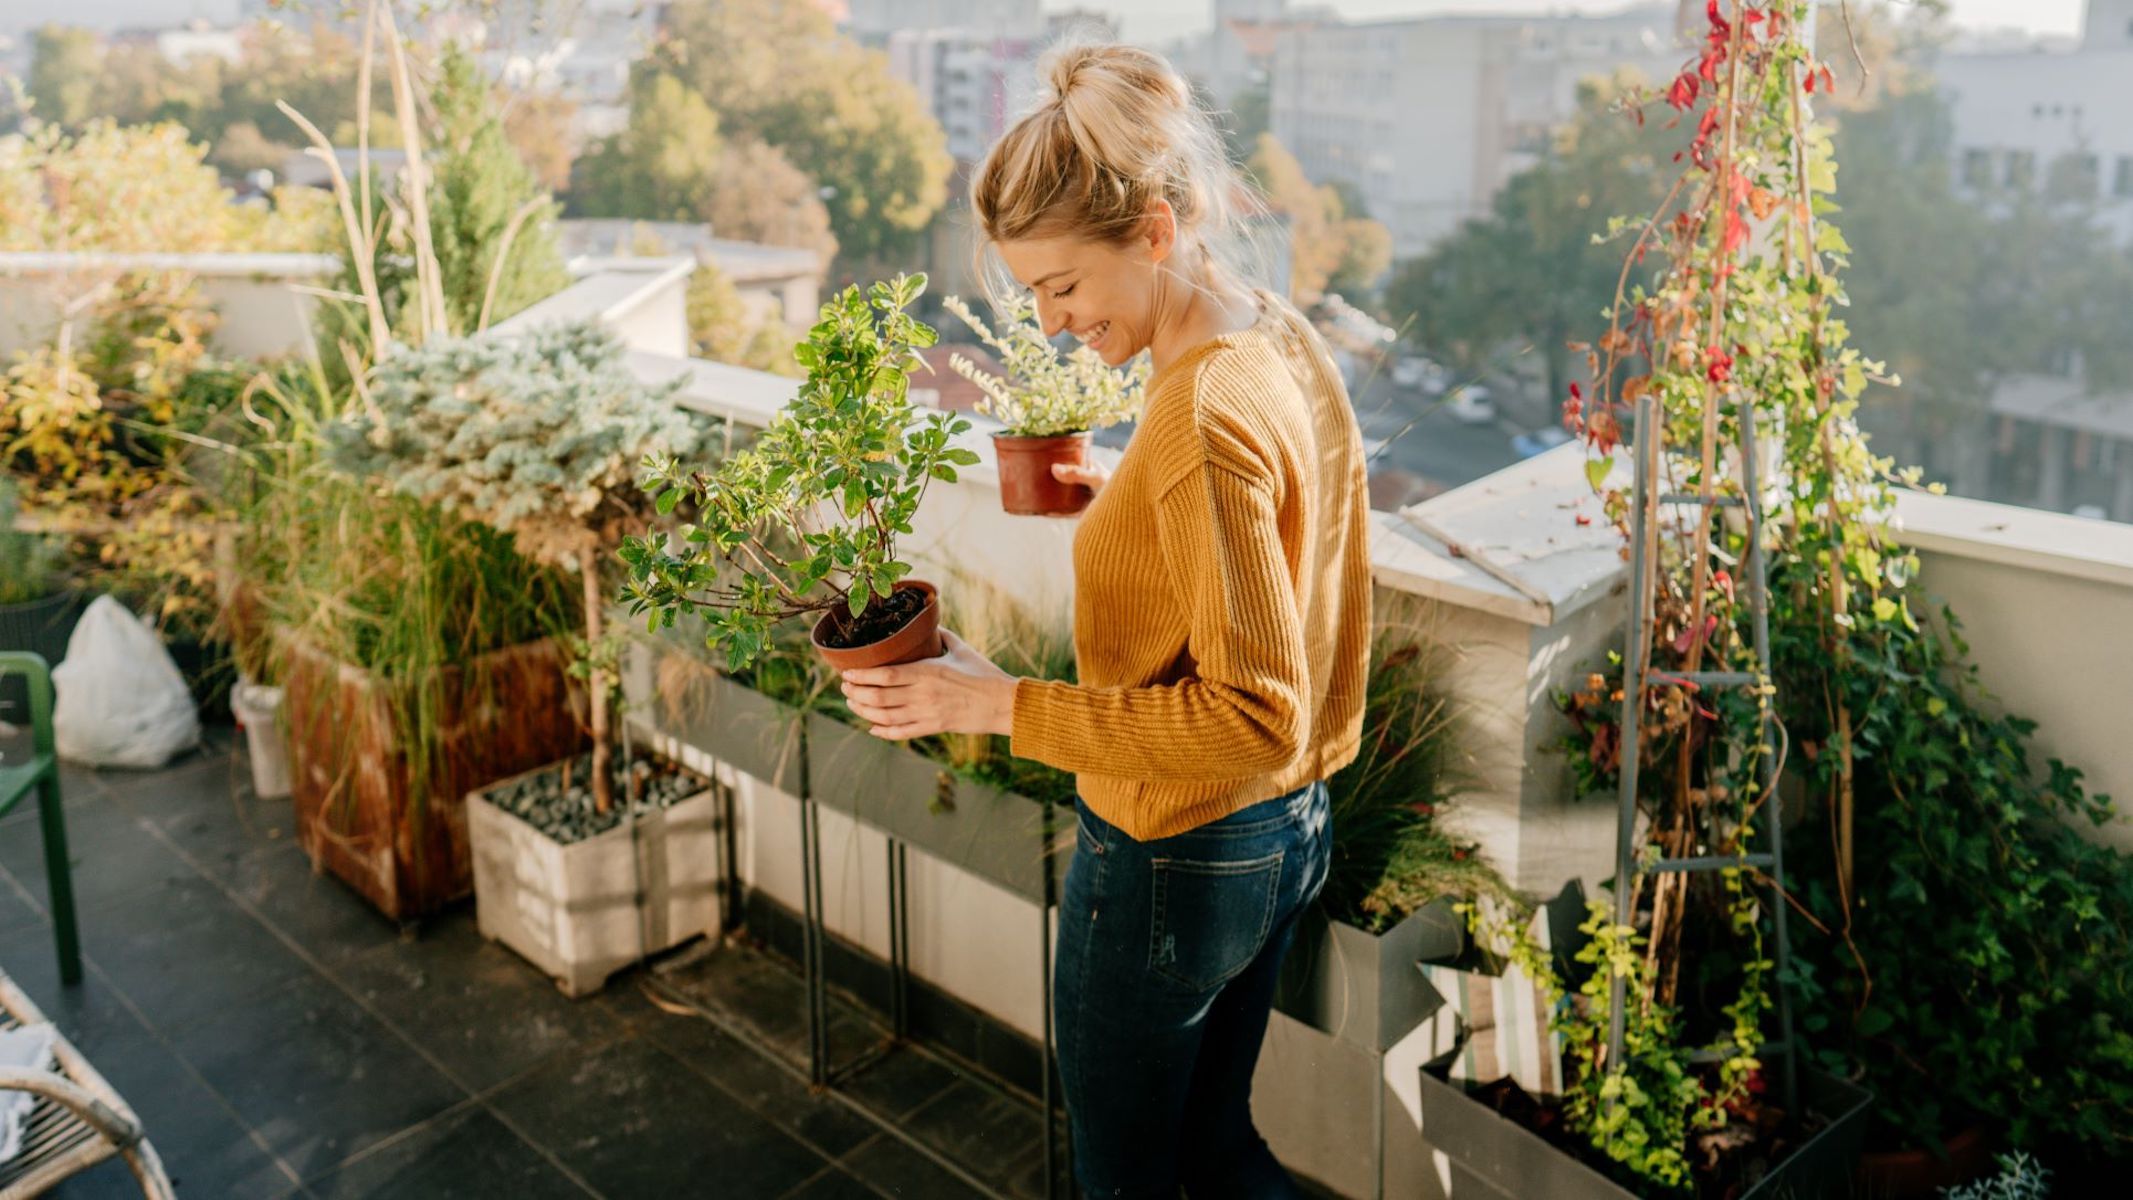 Los mejores árboles frutales en macetas para tu balcón o terraza